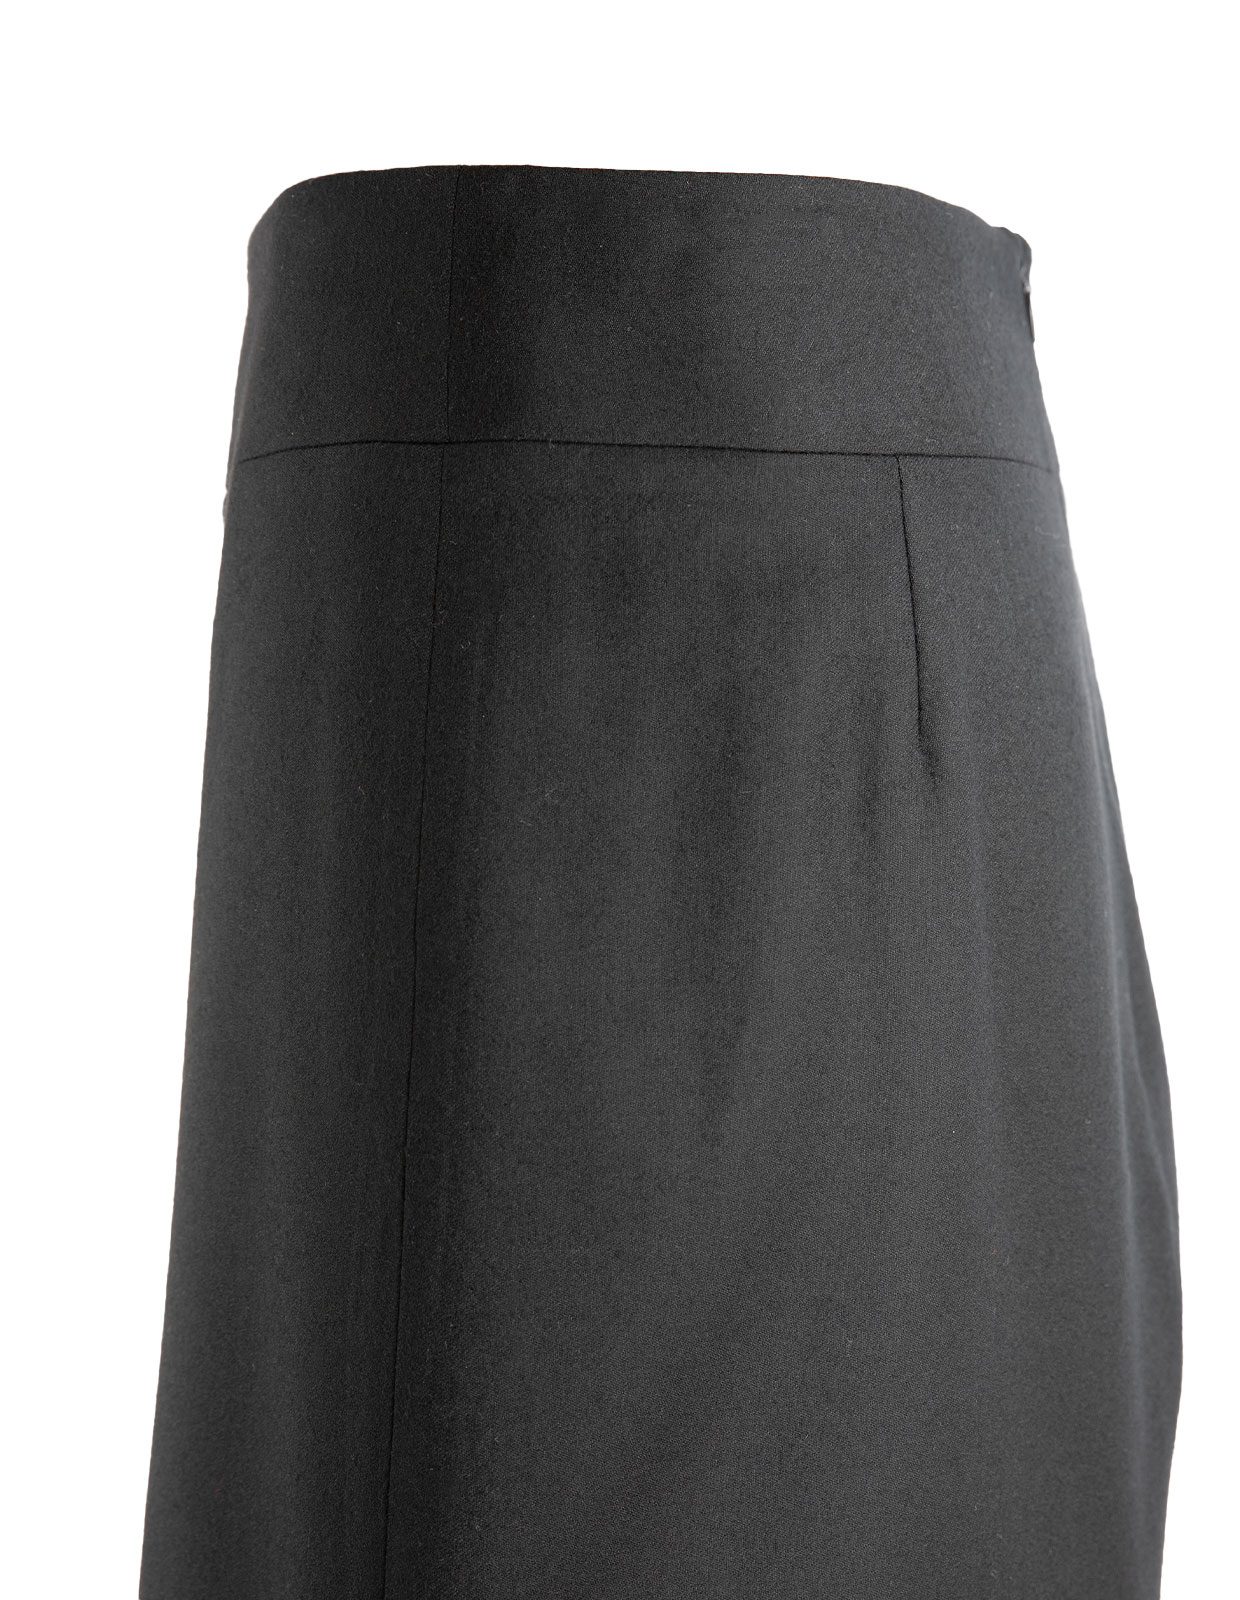 Skirt in Wool Black